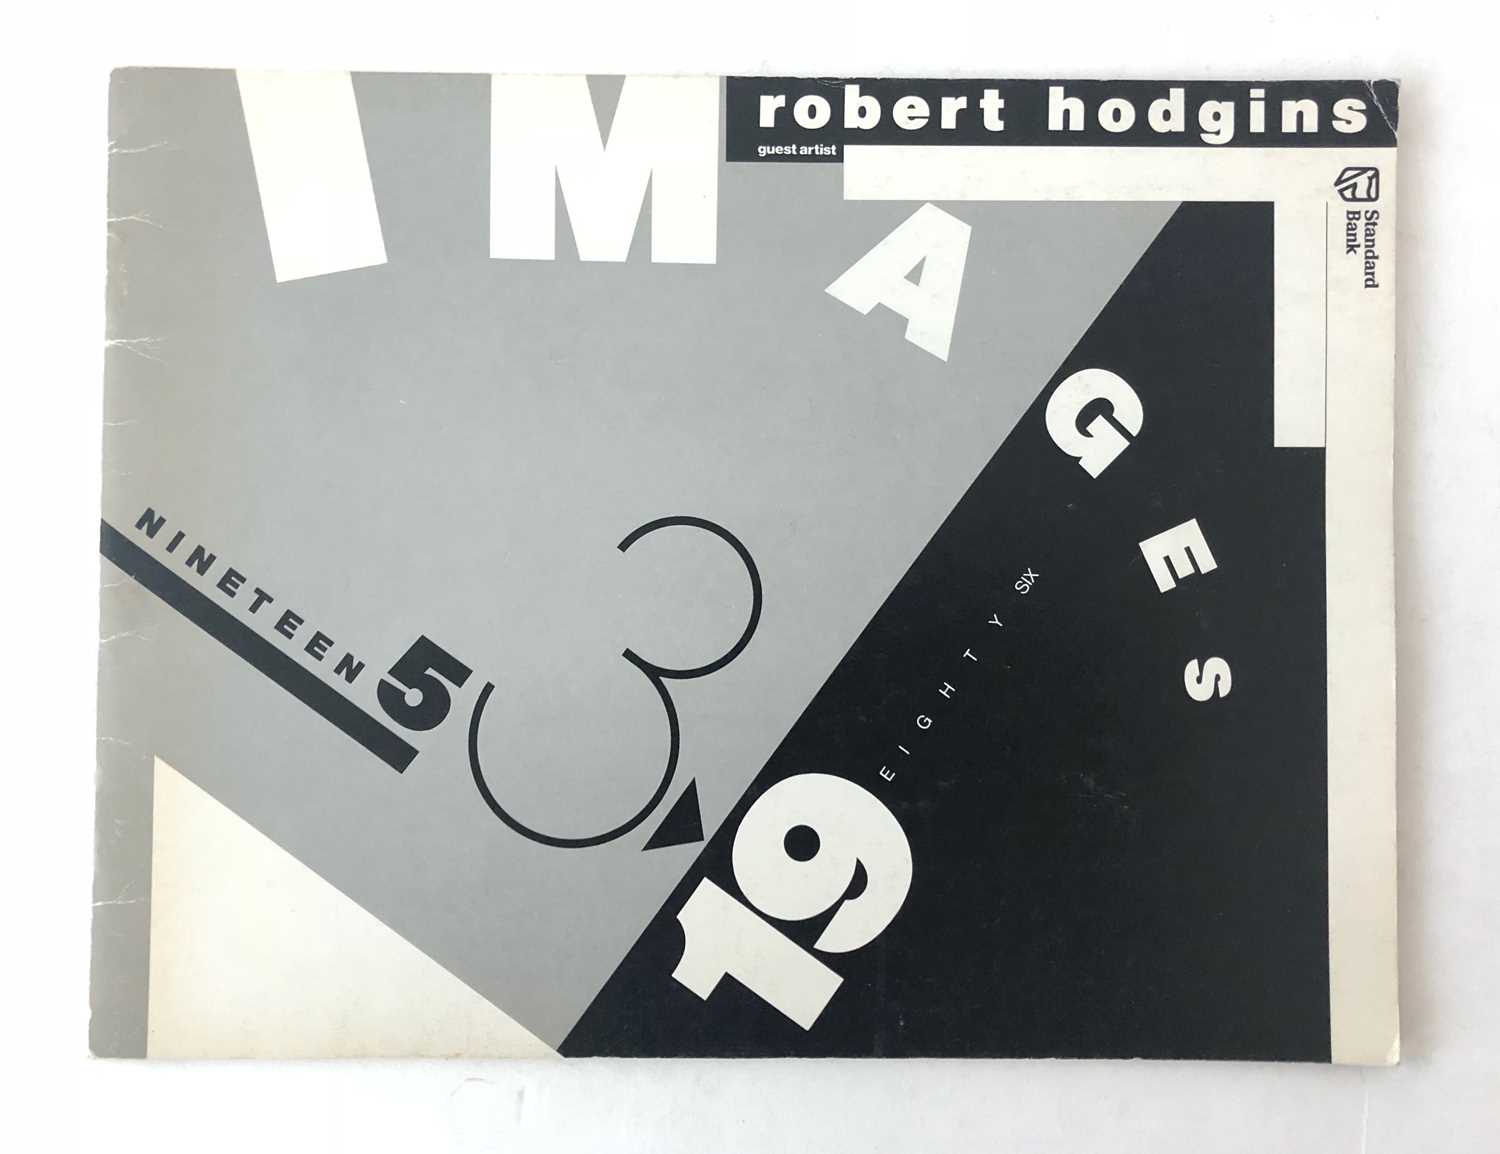 Lot 51 - Crump, Alan. Robert Hodgins: Images 1953-1986